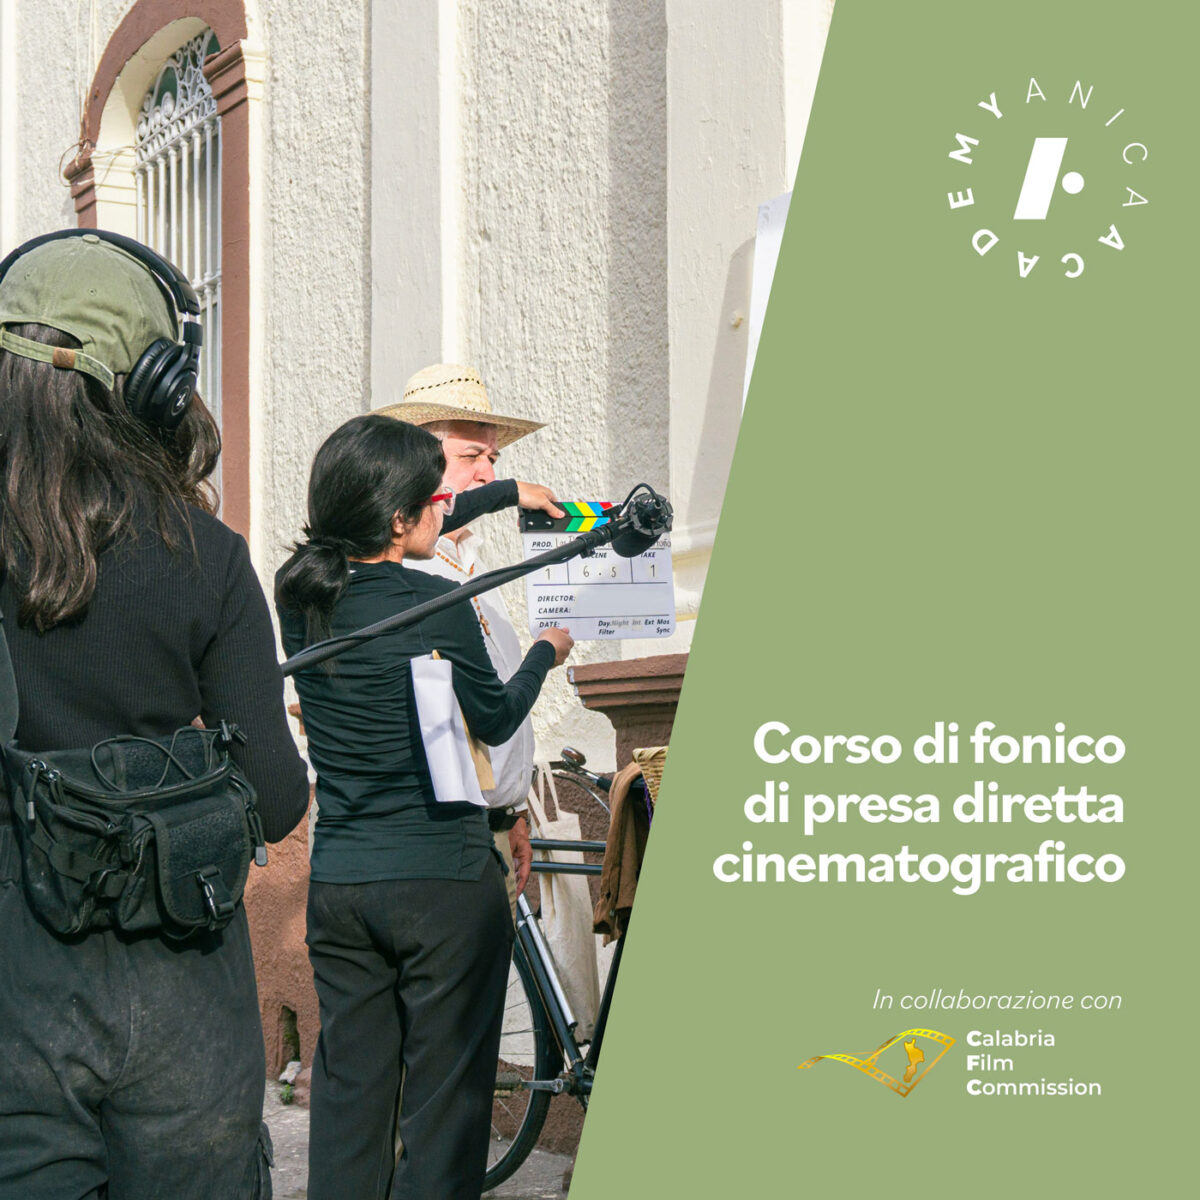 Anica Academy ETS e Calabria Film Commission annunciano il lancio del corso per fonico di presa diretta cinematrografica